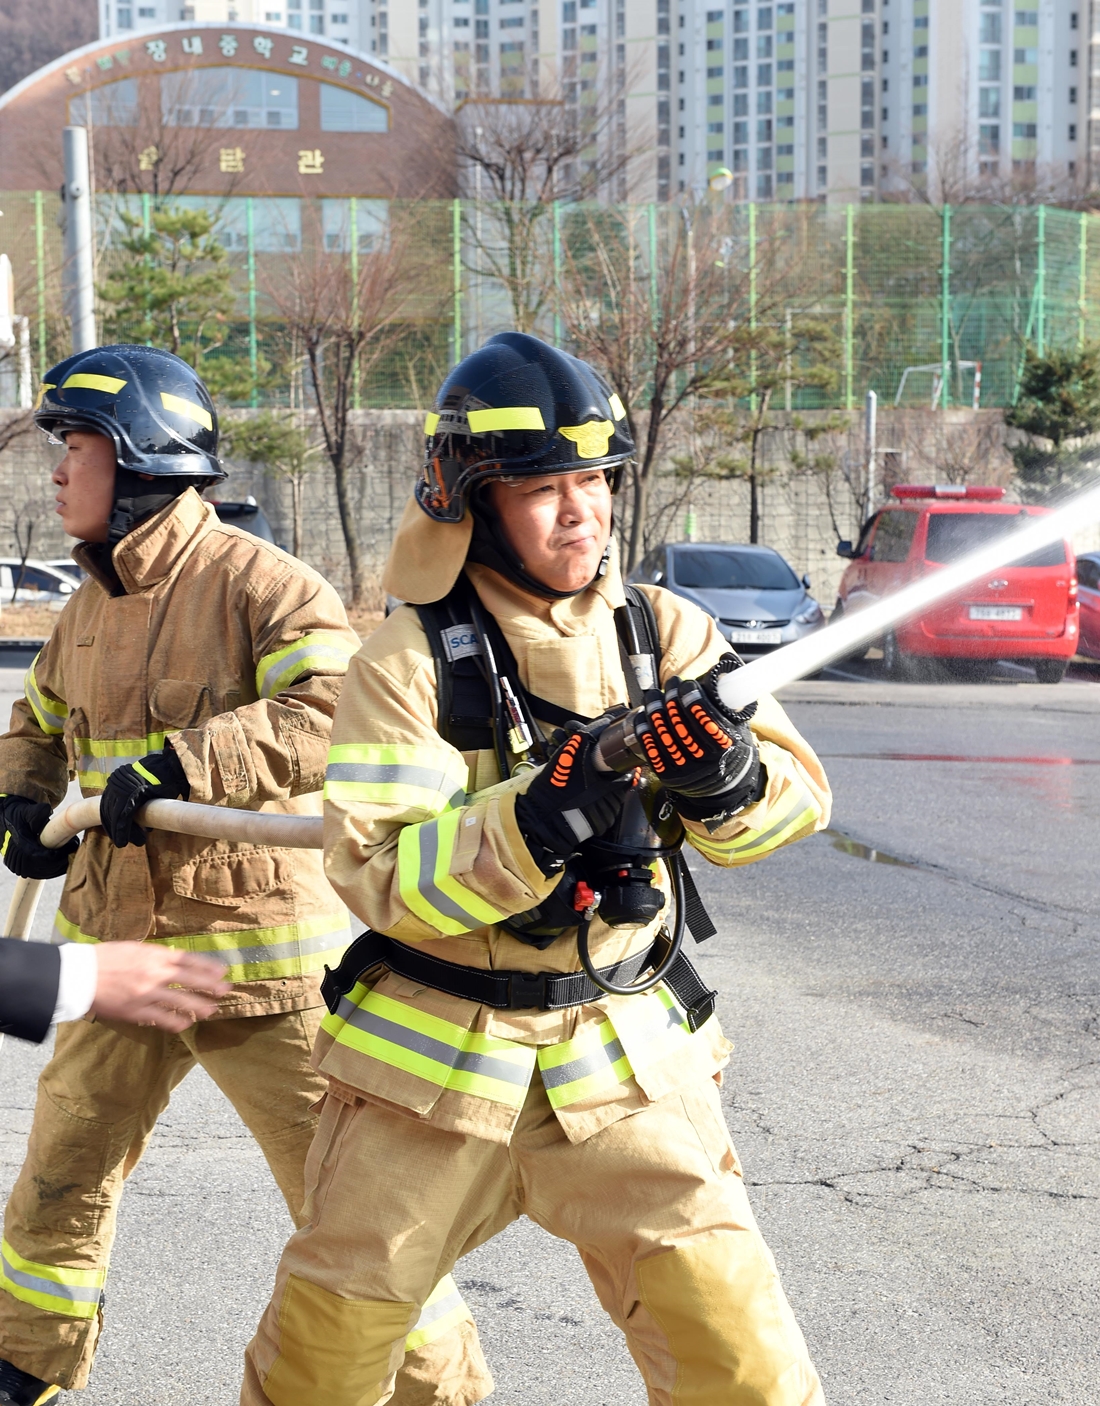 화재진압 : 류희인 행정안전부 재난안전관리본부장이 3월 22일 경기도 남양주 소방서에서 소방대원들의 도움을 받아 화재진압을 위한 살수 훈련을 하고 있다.